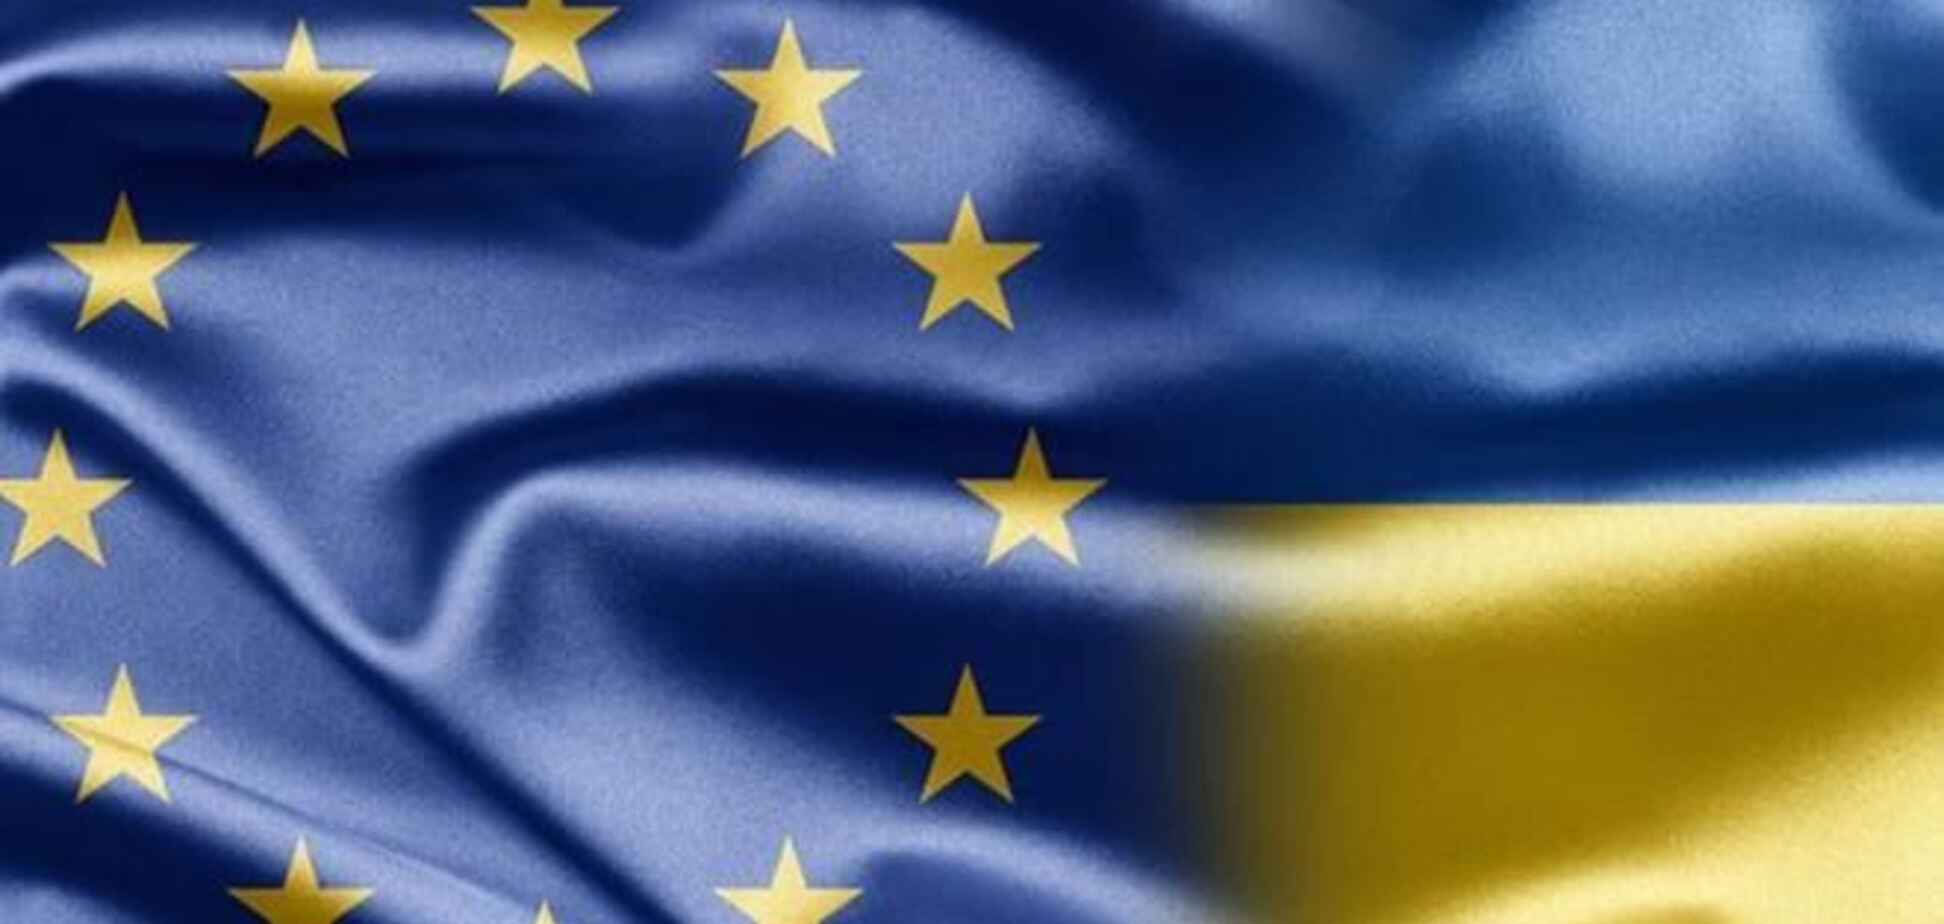 Принятые 16 января законы отдаляют Украину от ЕС – МИД Польши